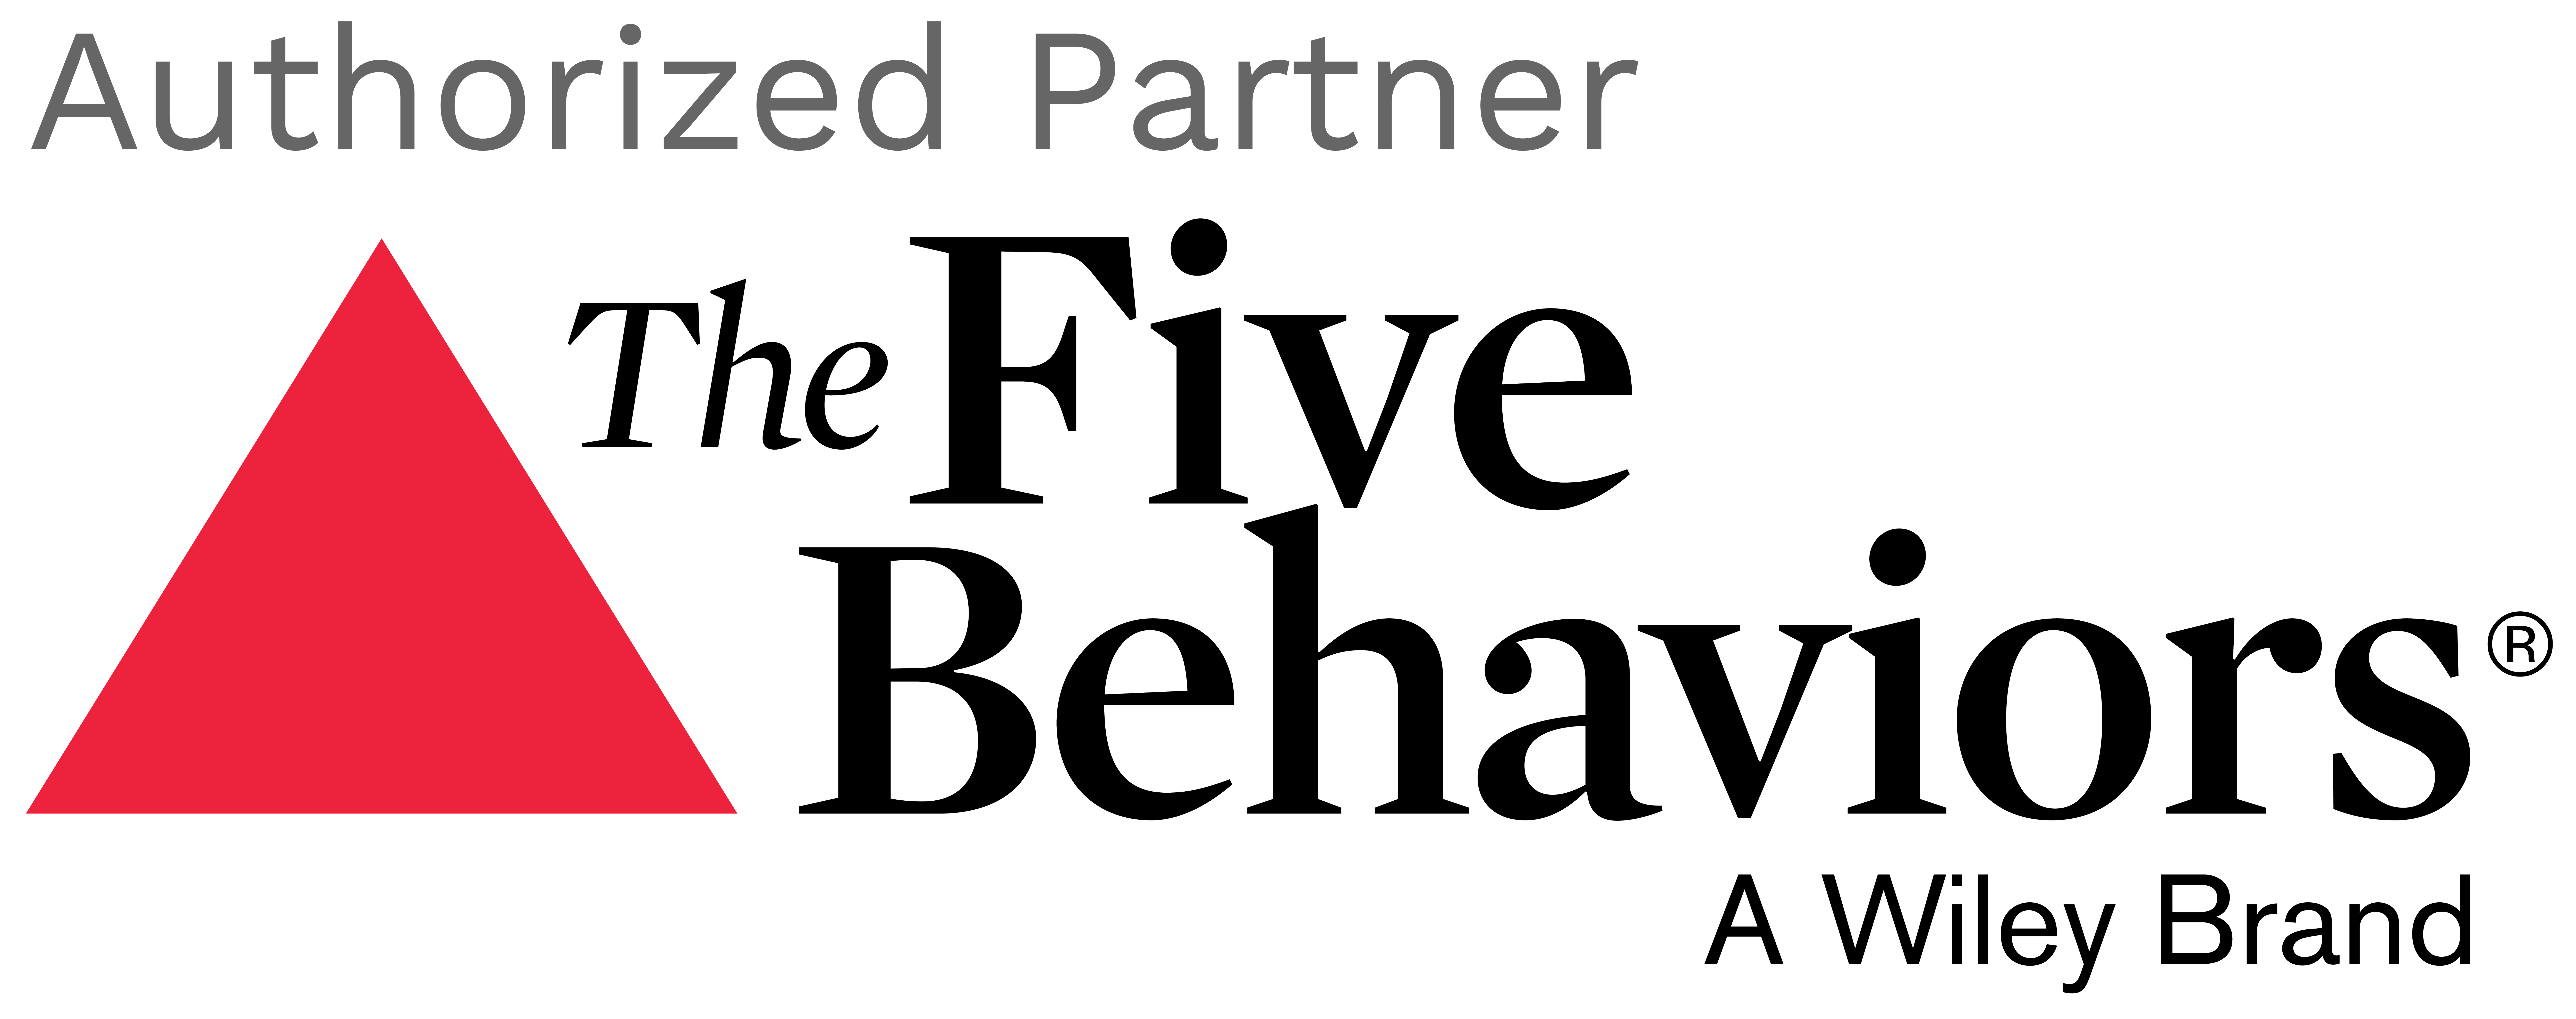 Authorized Partner